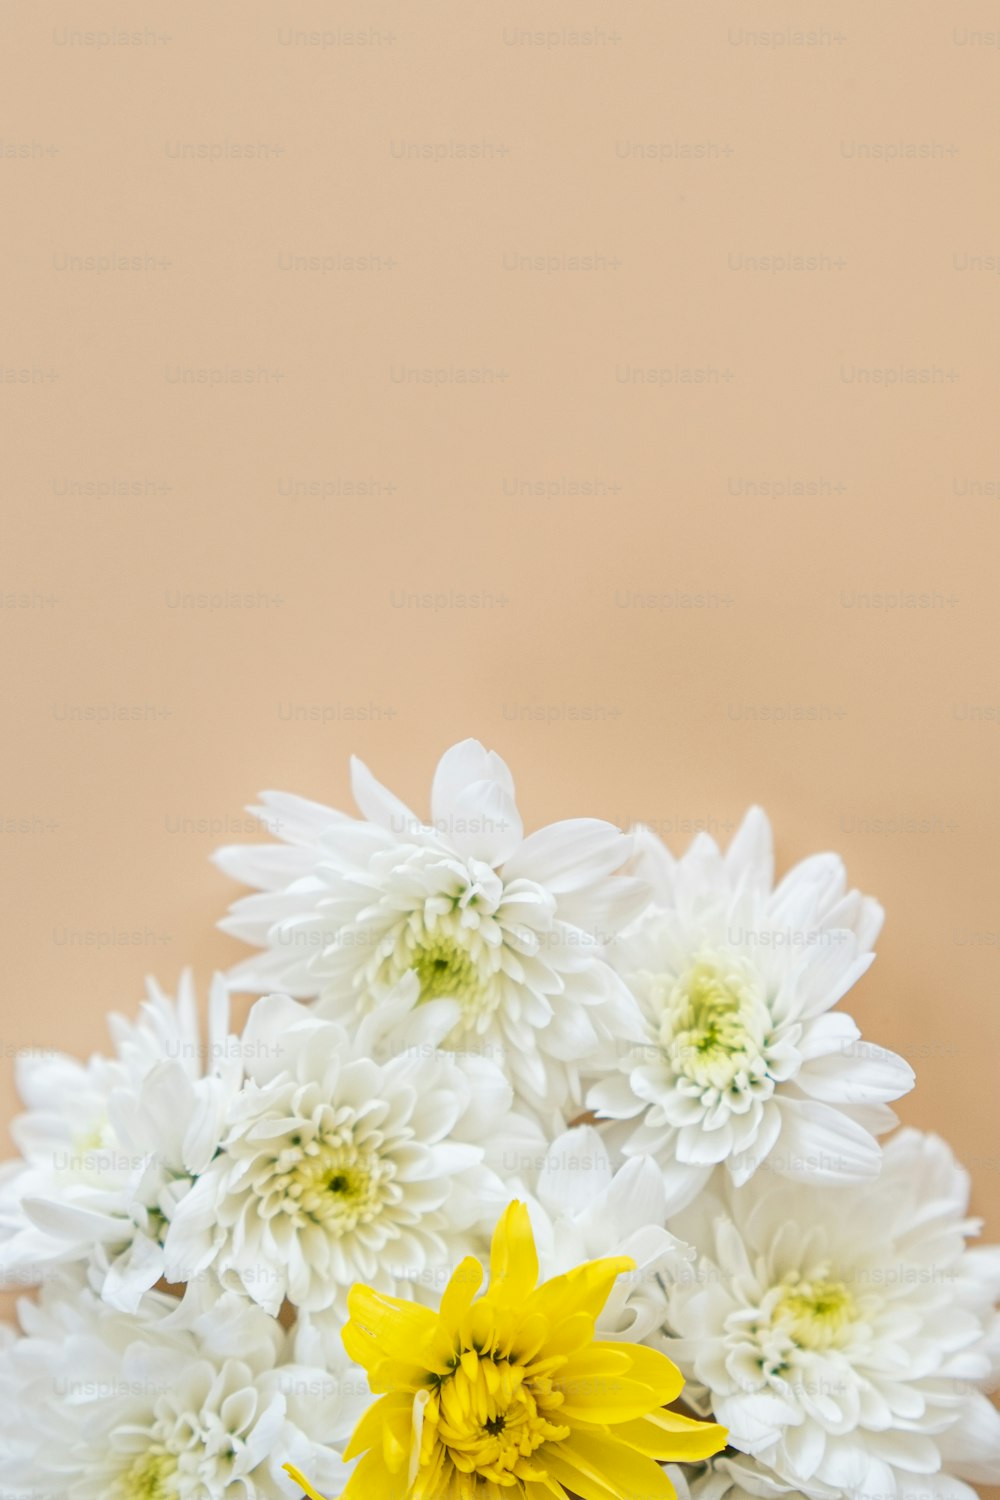 eine Vase gefüllt mit weißen und gelben Blumen